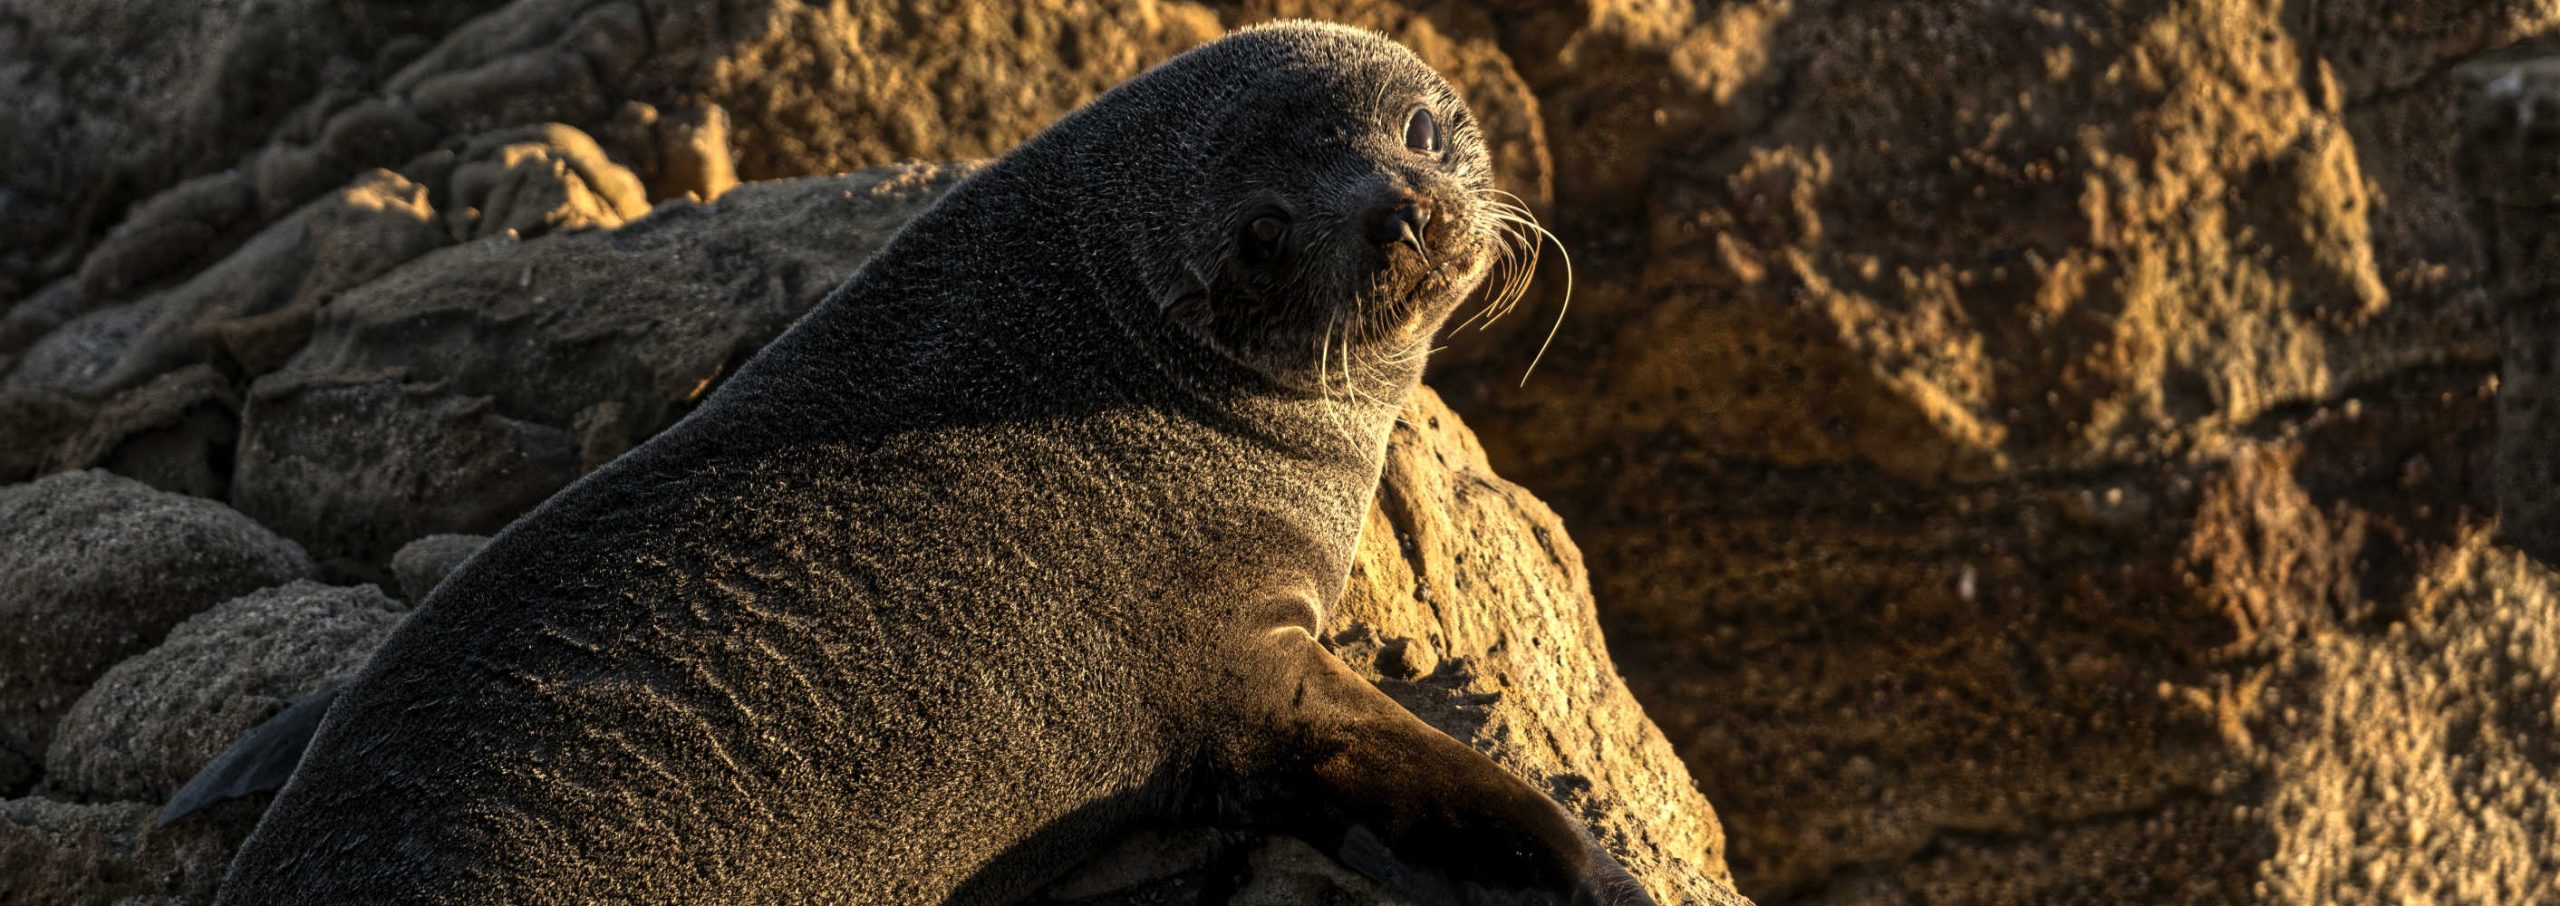 Red Rocks NZ Fur Seal, New Zealand